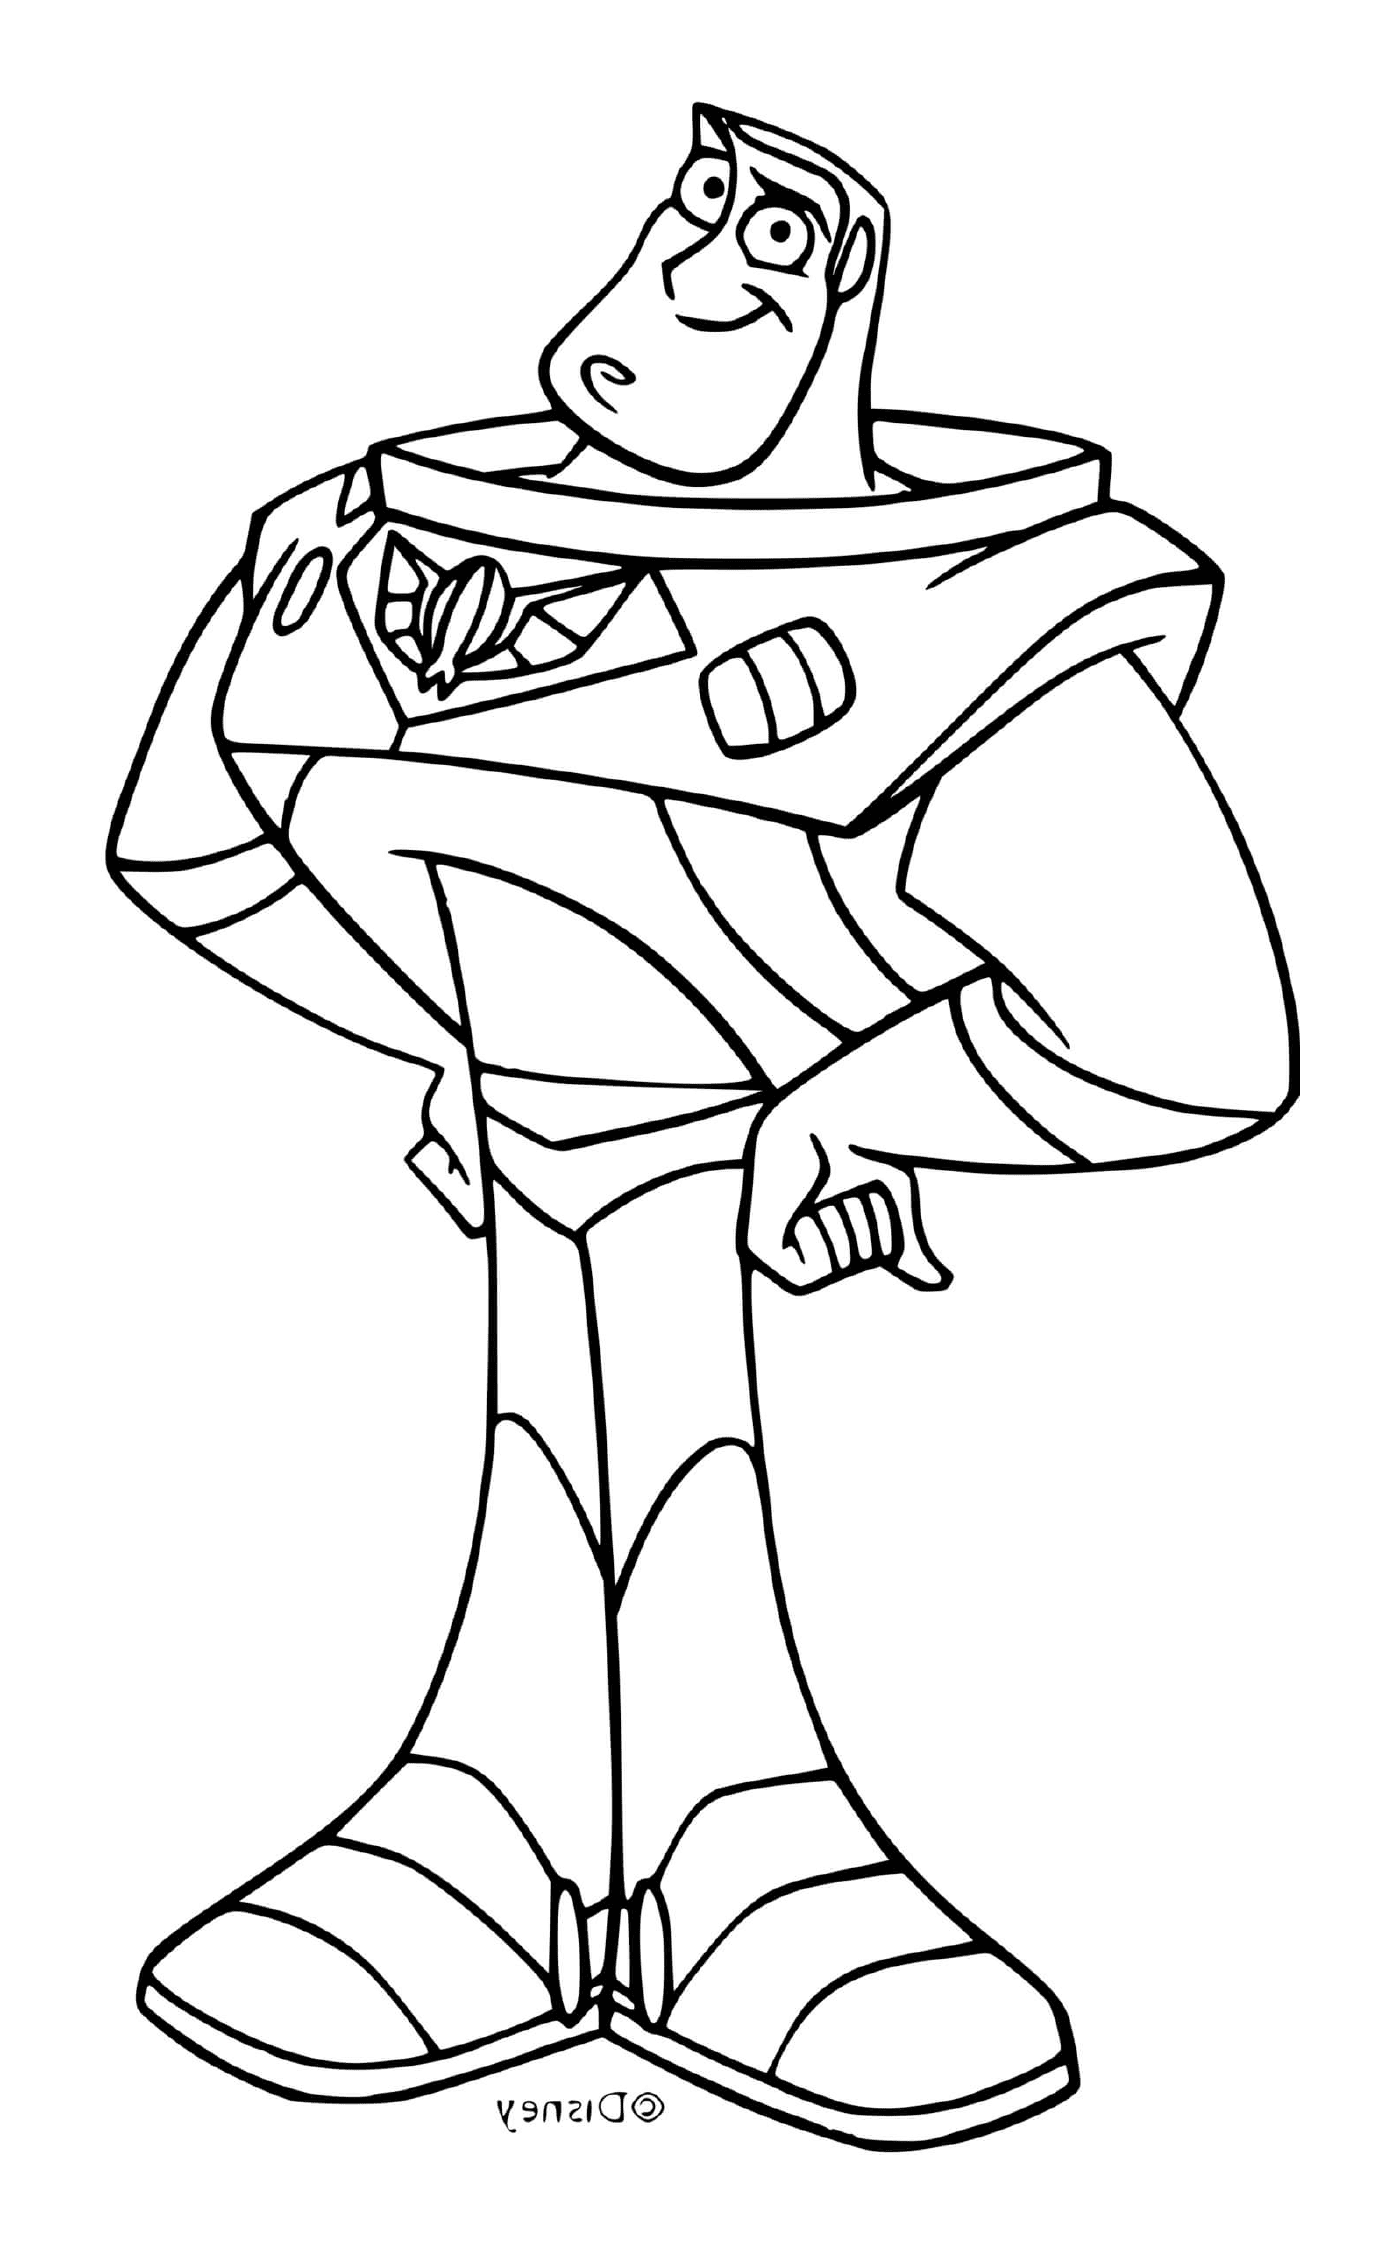  Buzz, the space ranger 